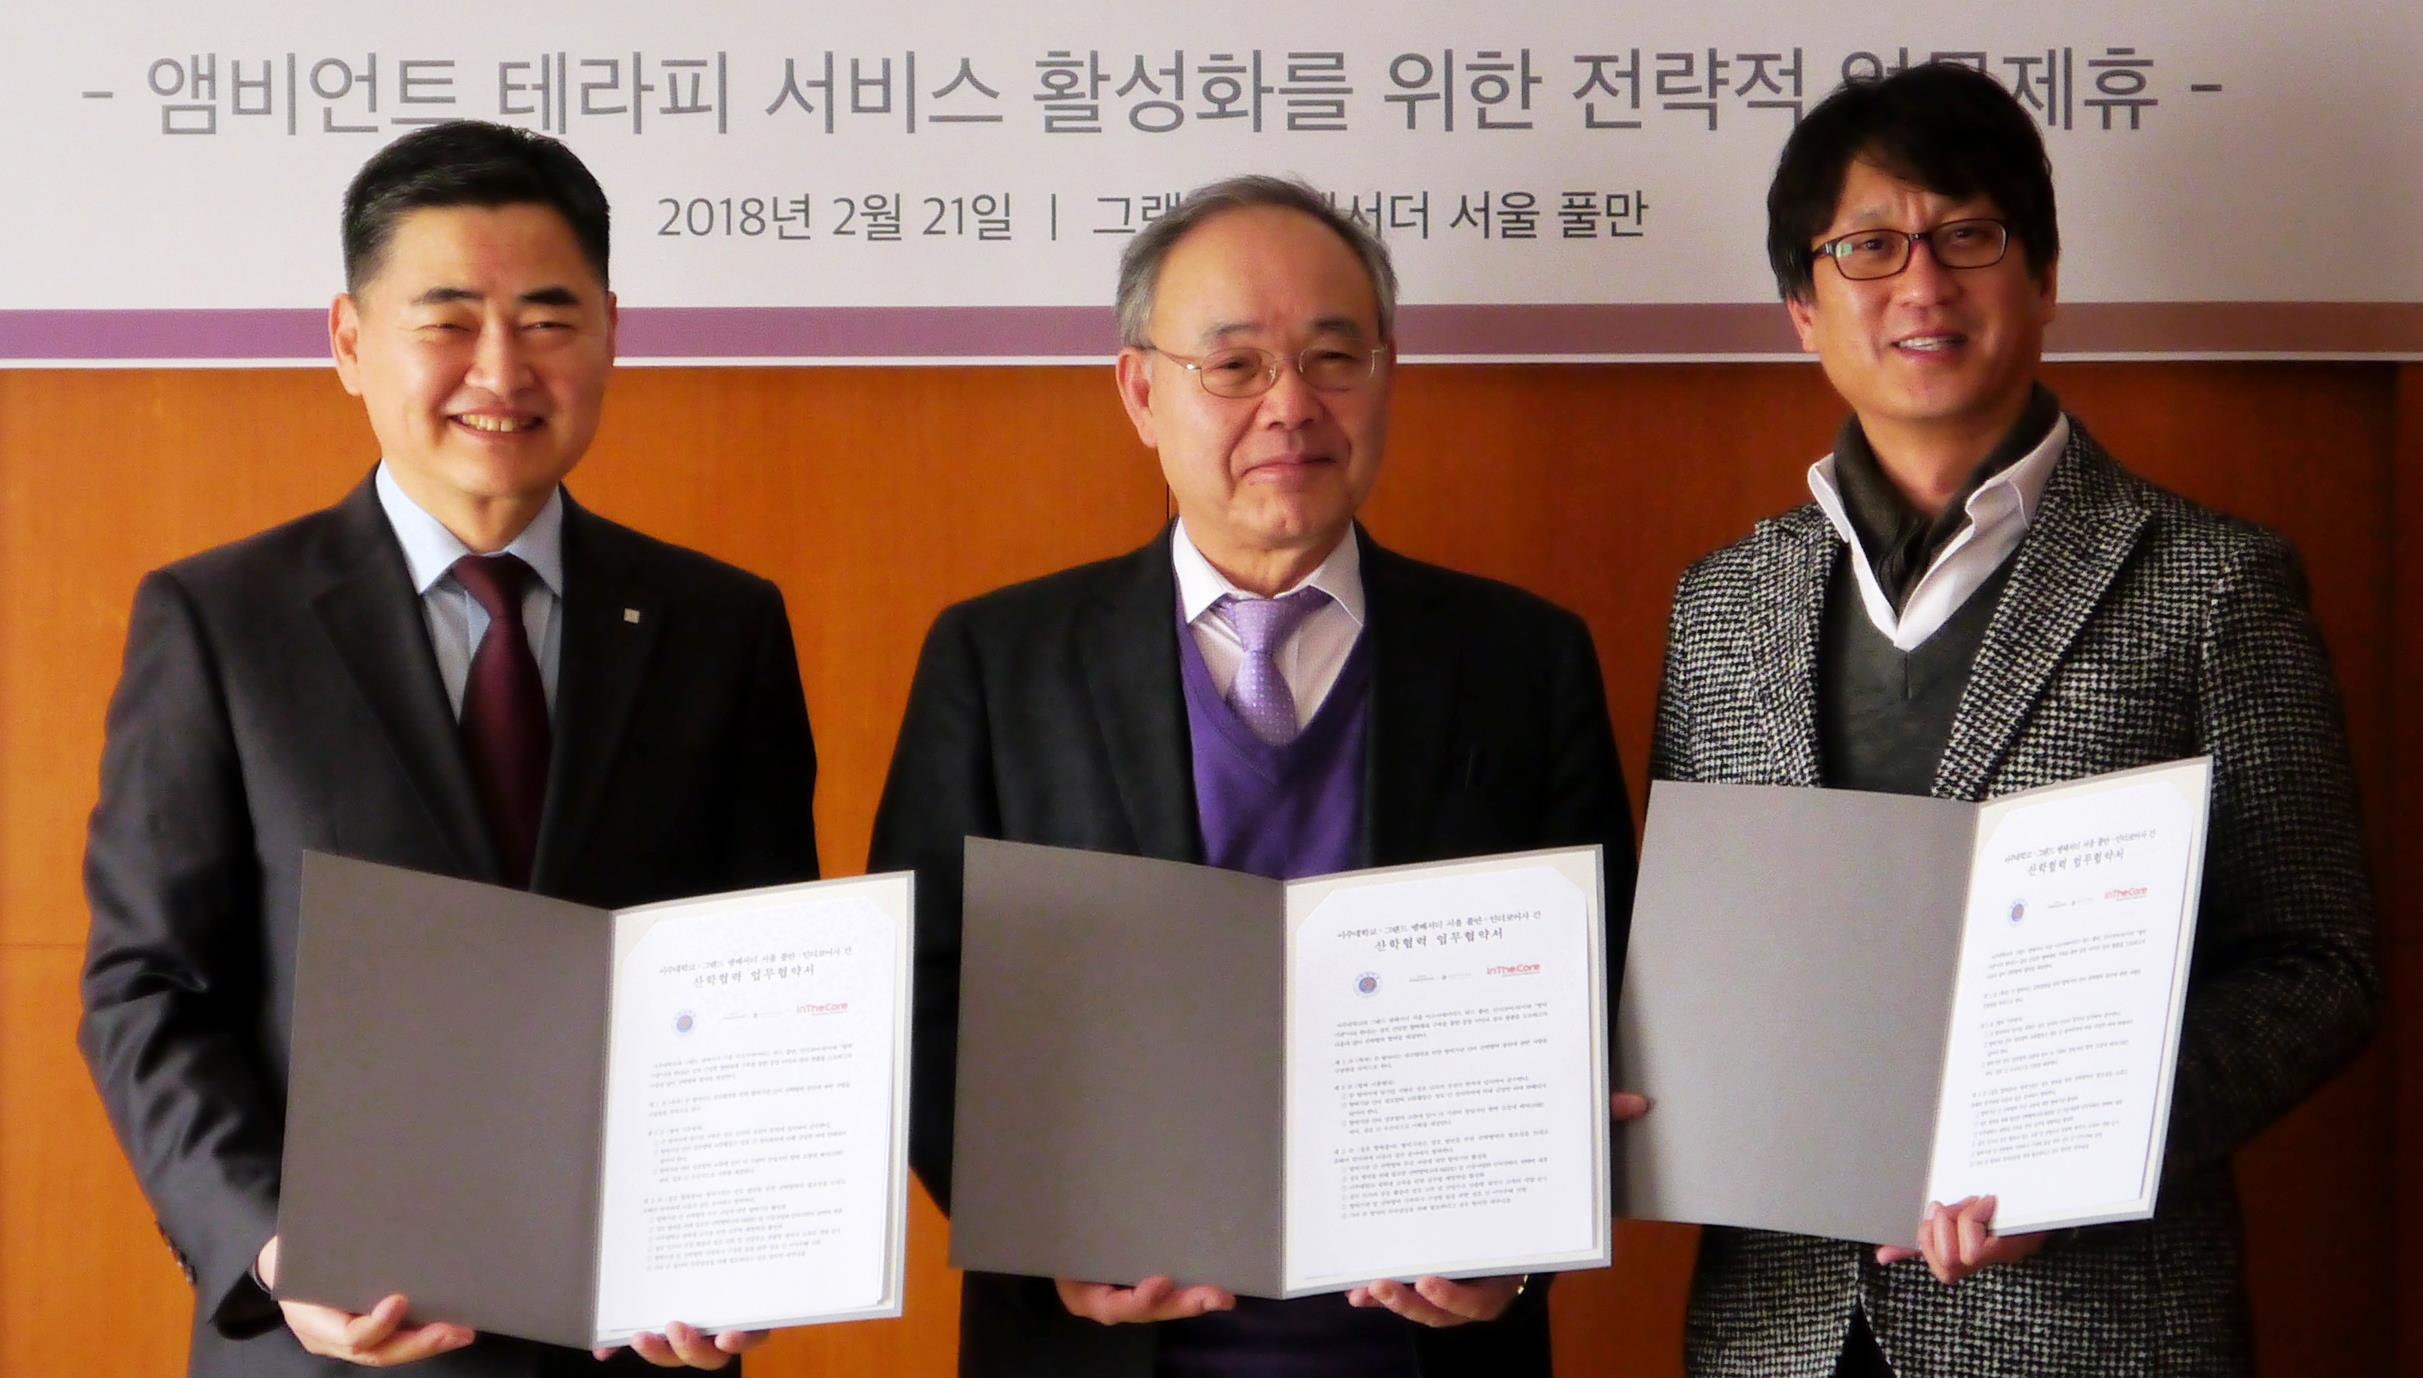 그랜드 앰버서더 서울·인더코어와 산학협력 업무협약